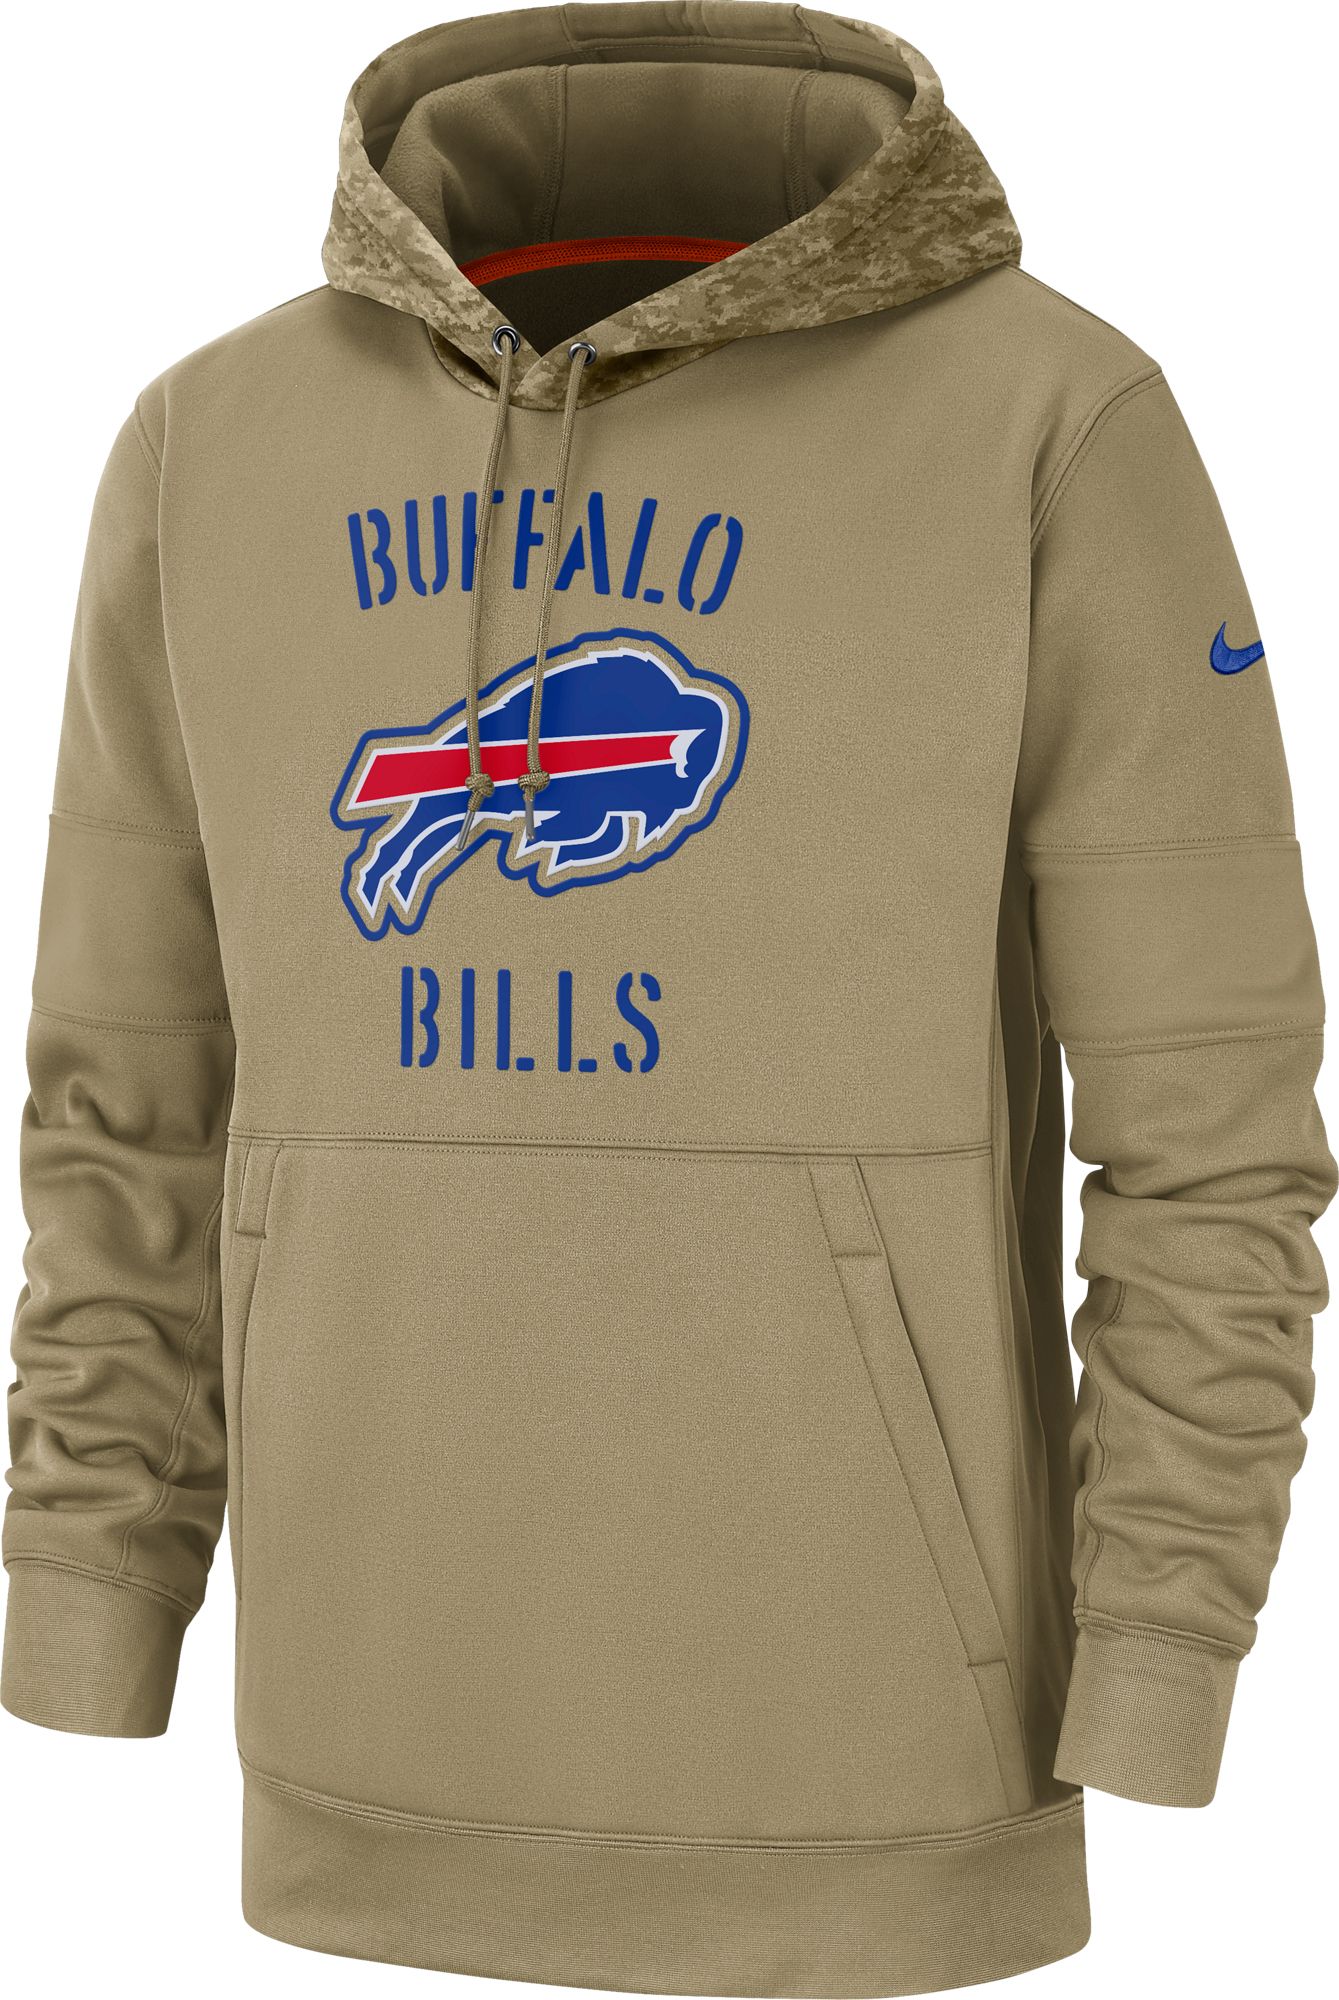 buffalo bills camo hoodie